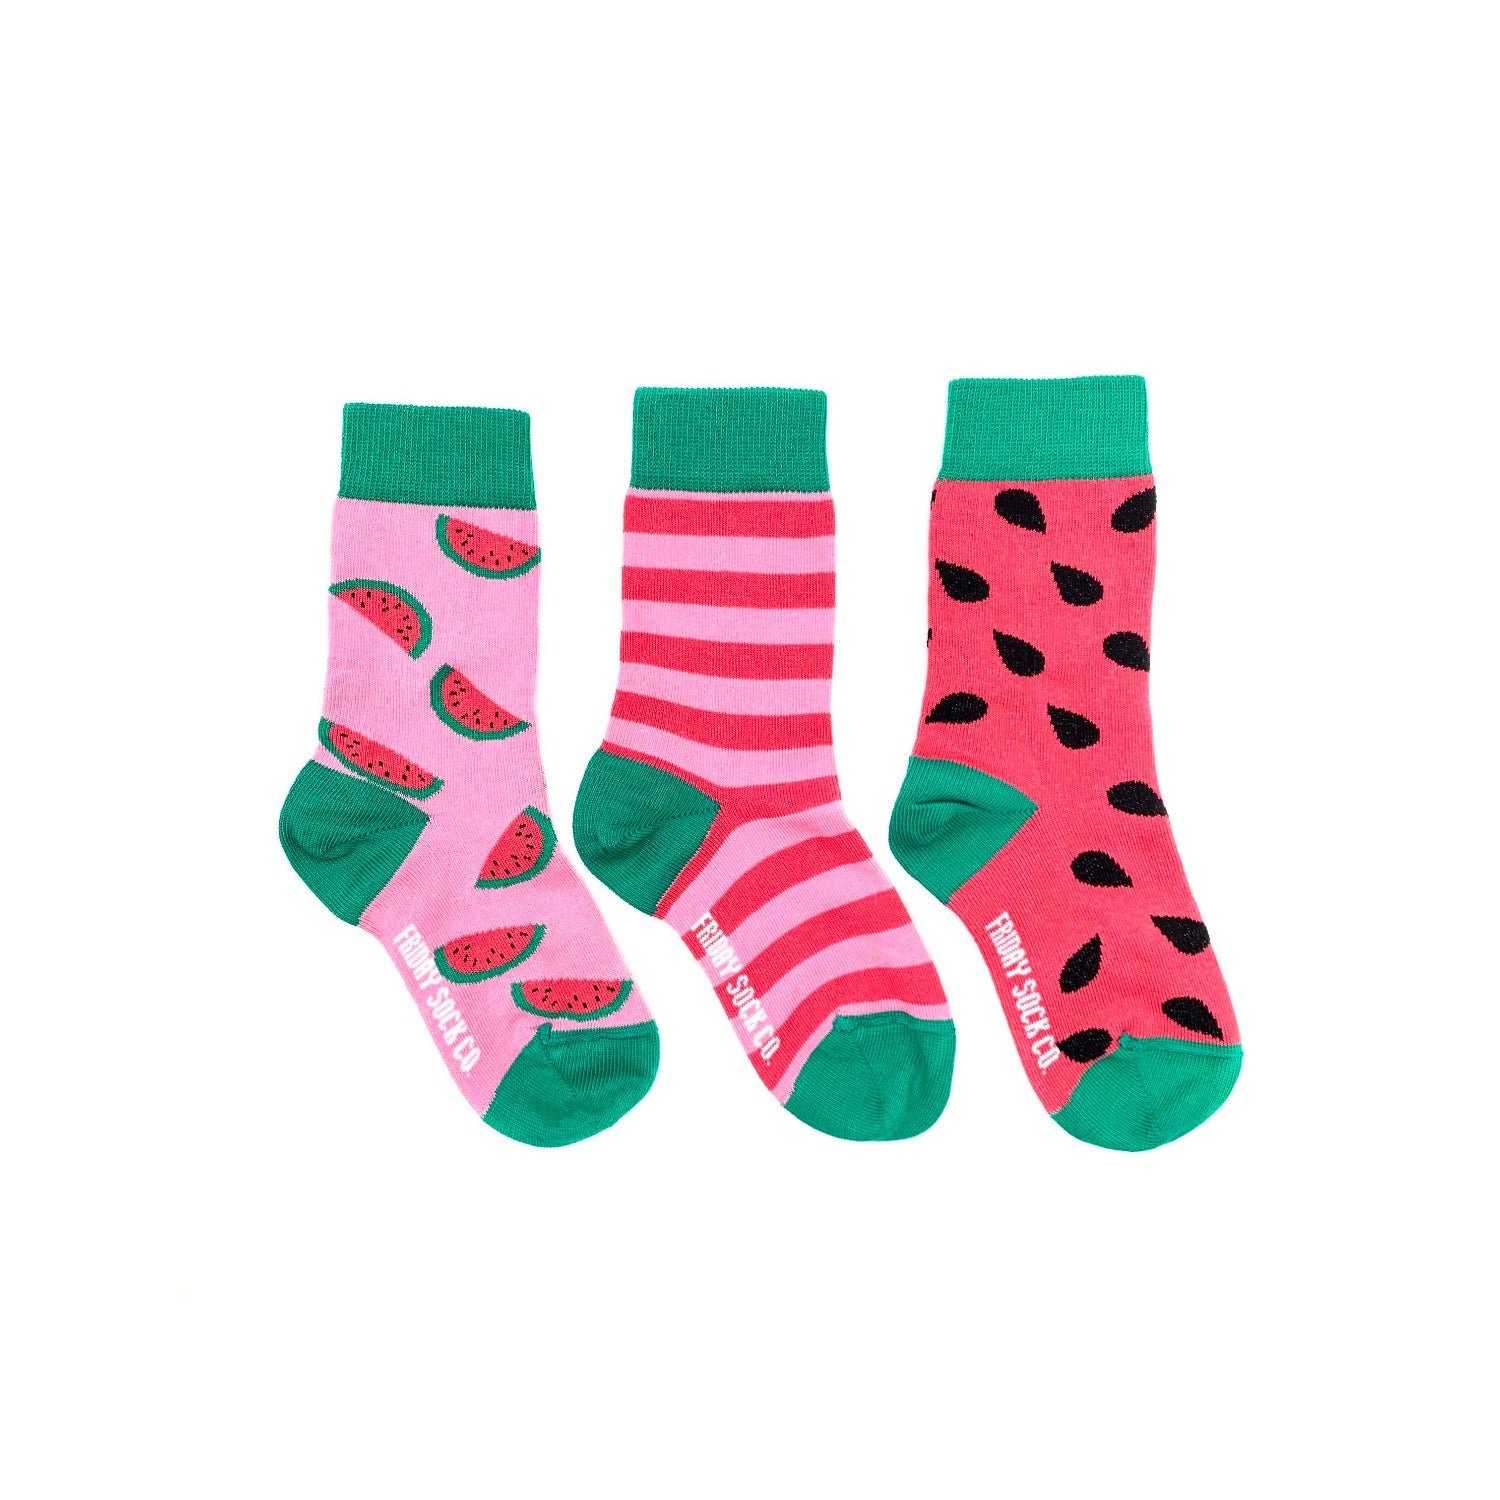 Shop Mismatched Socks, Friday Sock Co.